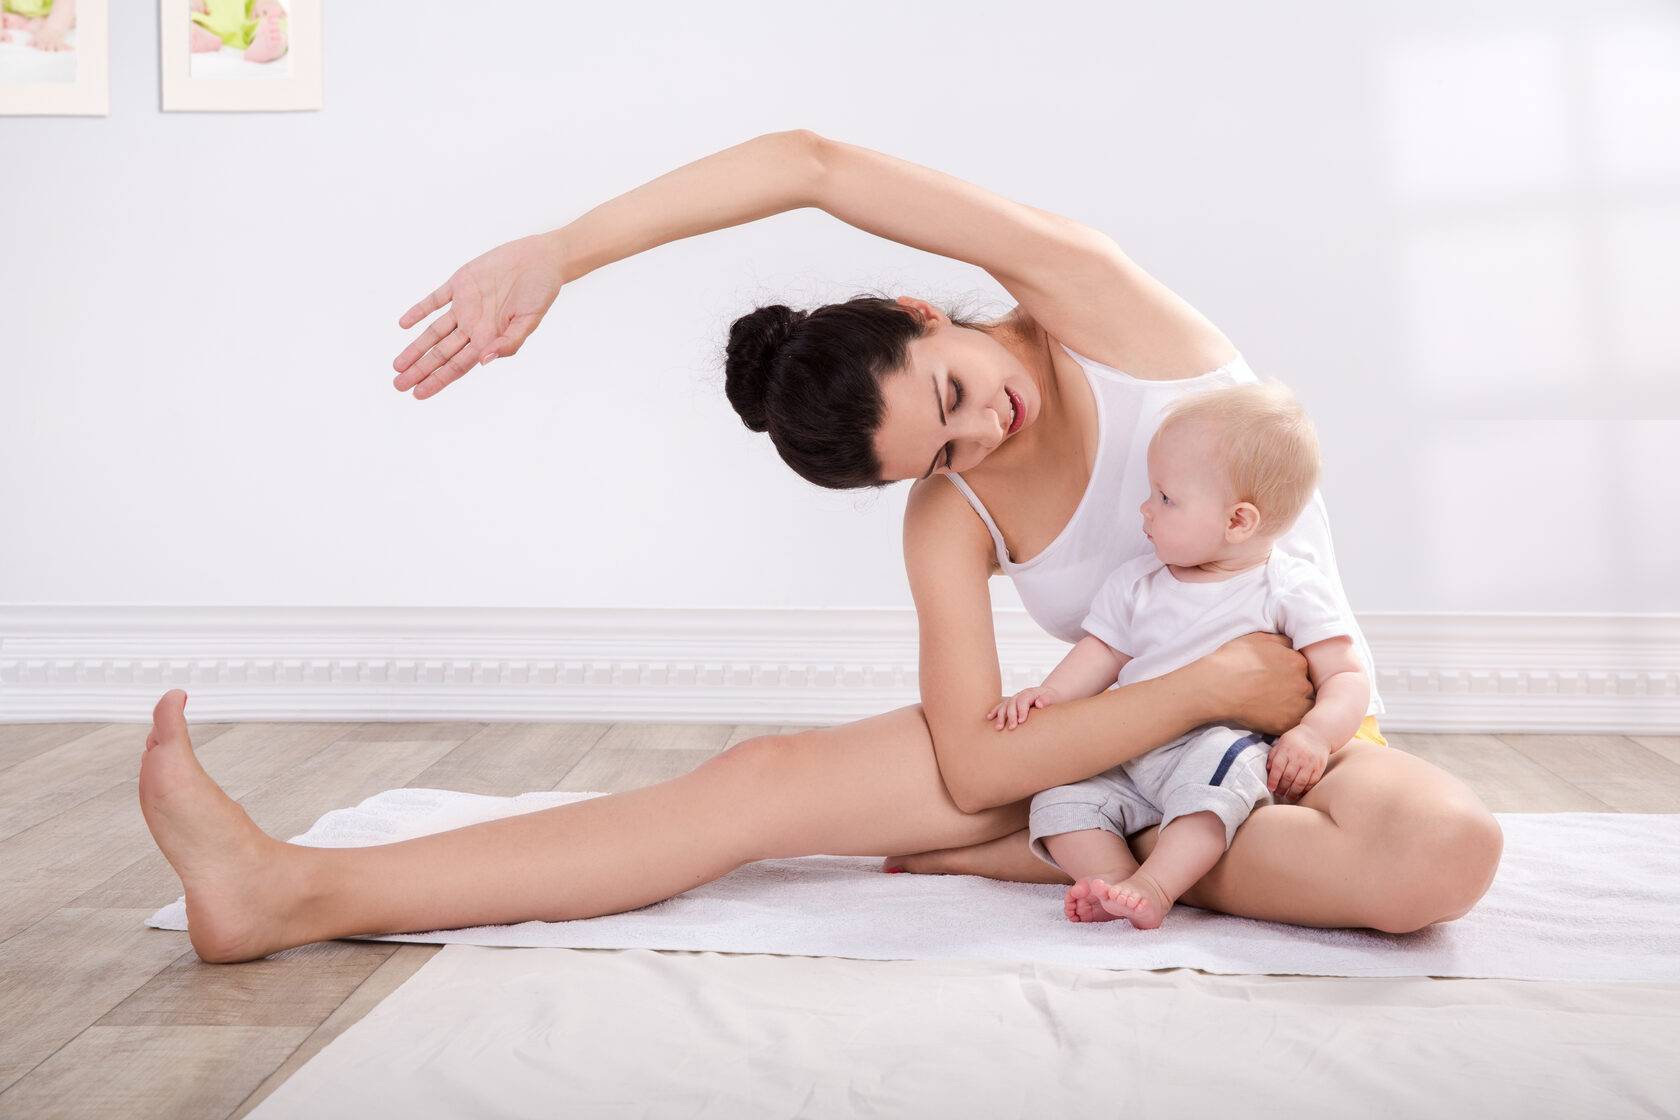 Упражнения после родов для похудения в домашних условиях при грудном и искусственном вскармливании, гимнастика и фитнес, видео